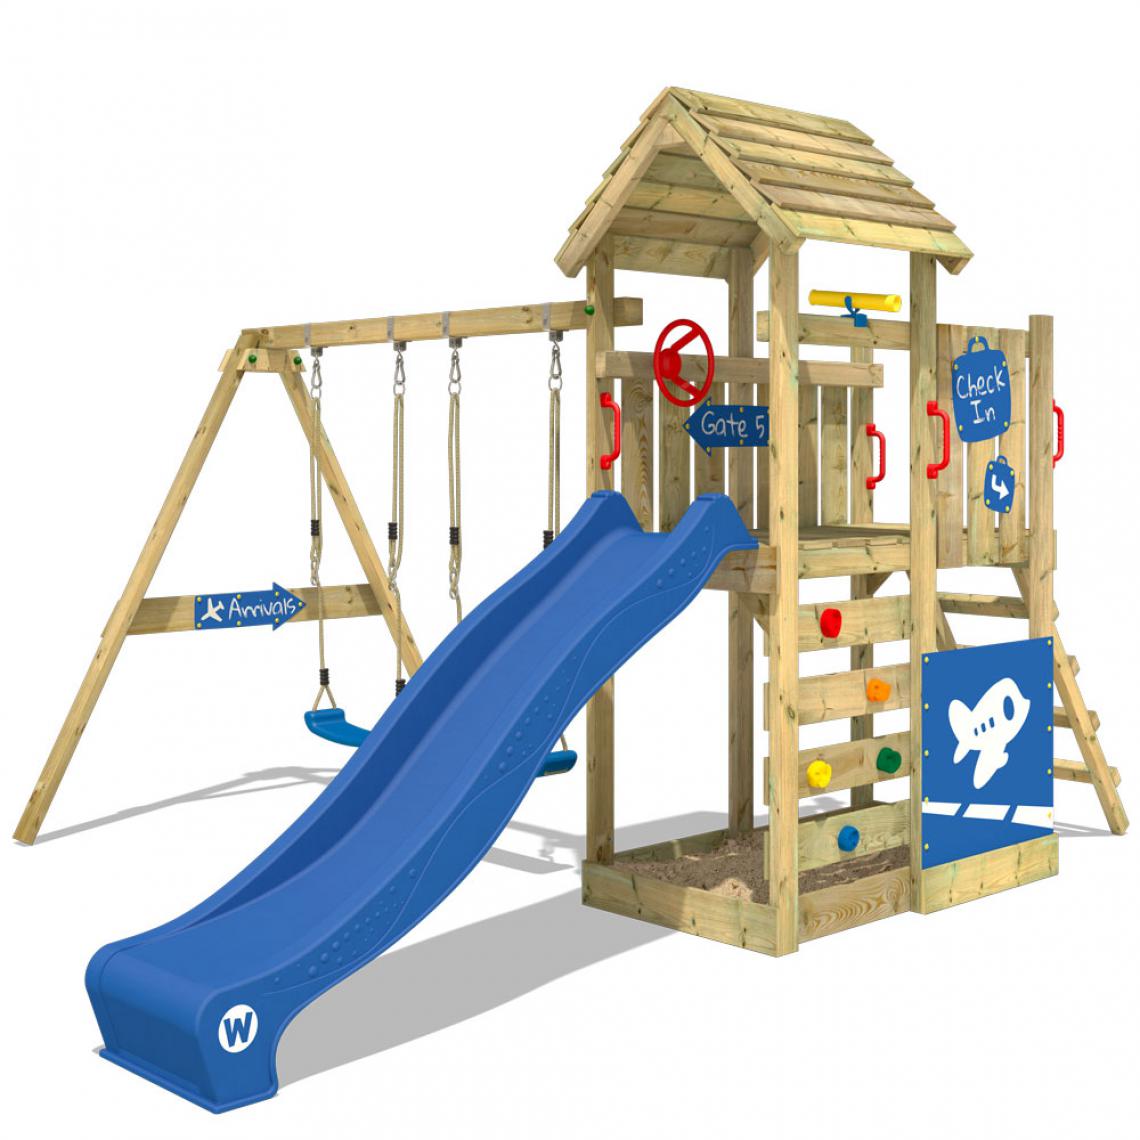 Wickey - Aire de jeux Portique bois MultiFlyer Deluxe avec balançoire et toboggan bleu Maison enfant extérieure avec bac à sable, échelle d'escalade & accessoires de jeux - Aire de jeux